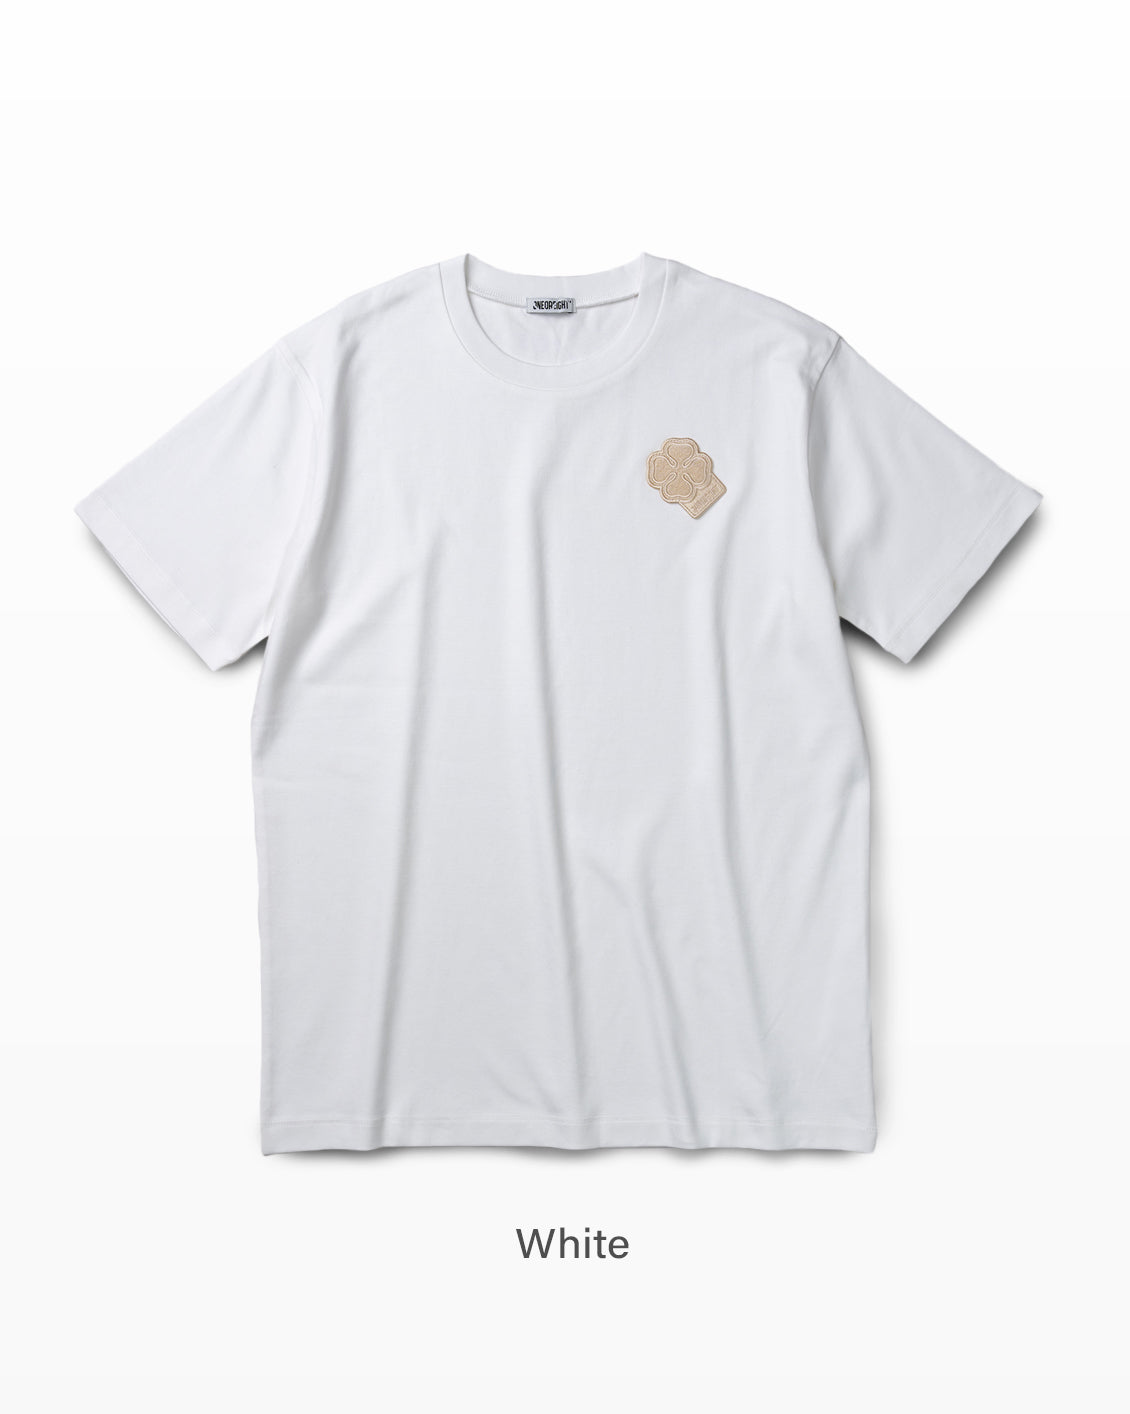 ONEOR EIGHT Tシャツ/Cottonスビンプラチナム/刺繍ワッペン